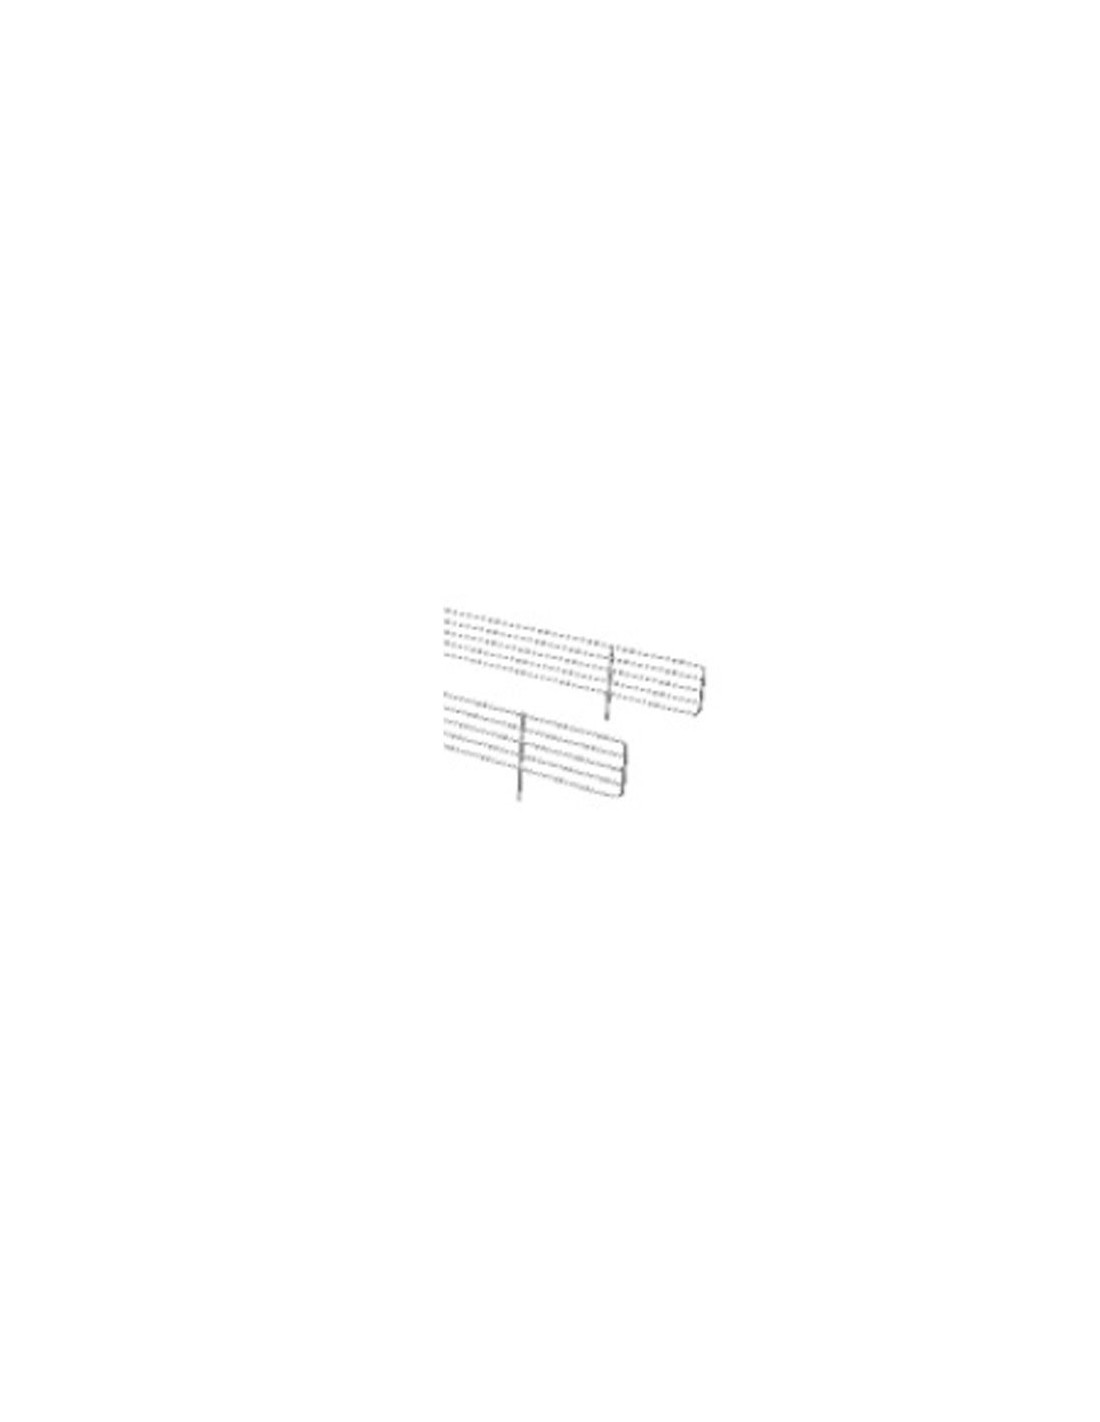 Griglia ferma-prodotti in filo plastificato colore bianco - Per mod. LIDO 187